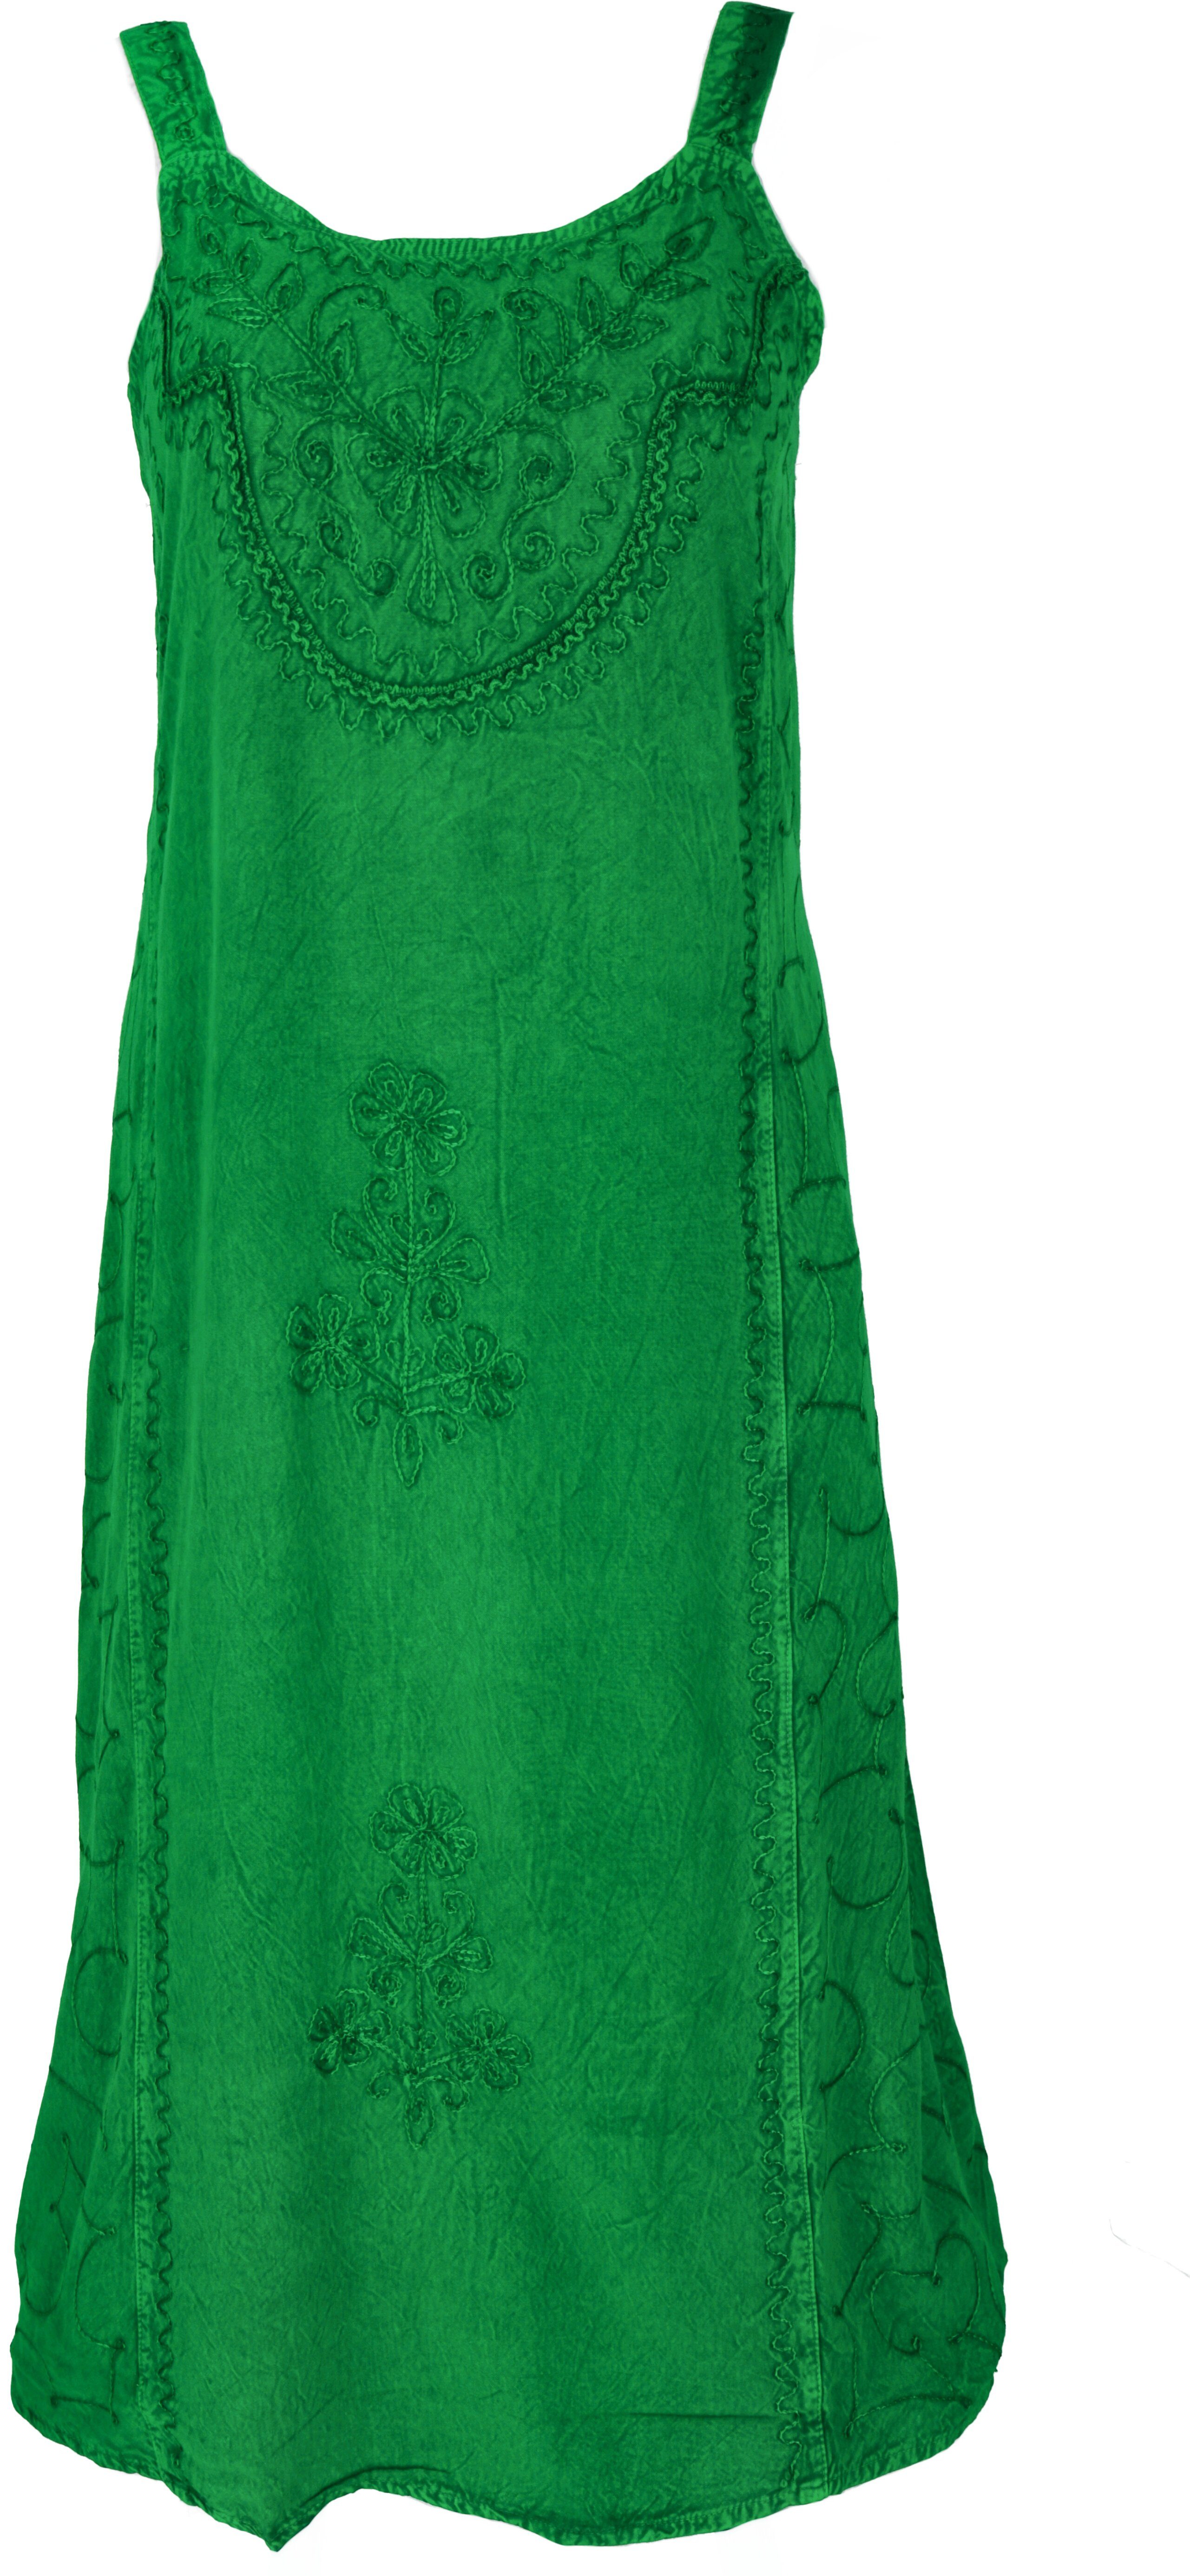 Midikleid Boho alternative Guru-Shop indisches Bekleidung grün - Sommerkleid chic Besticktes